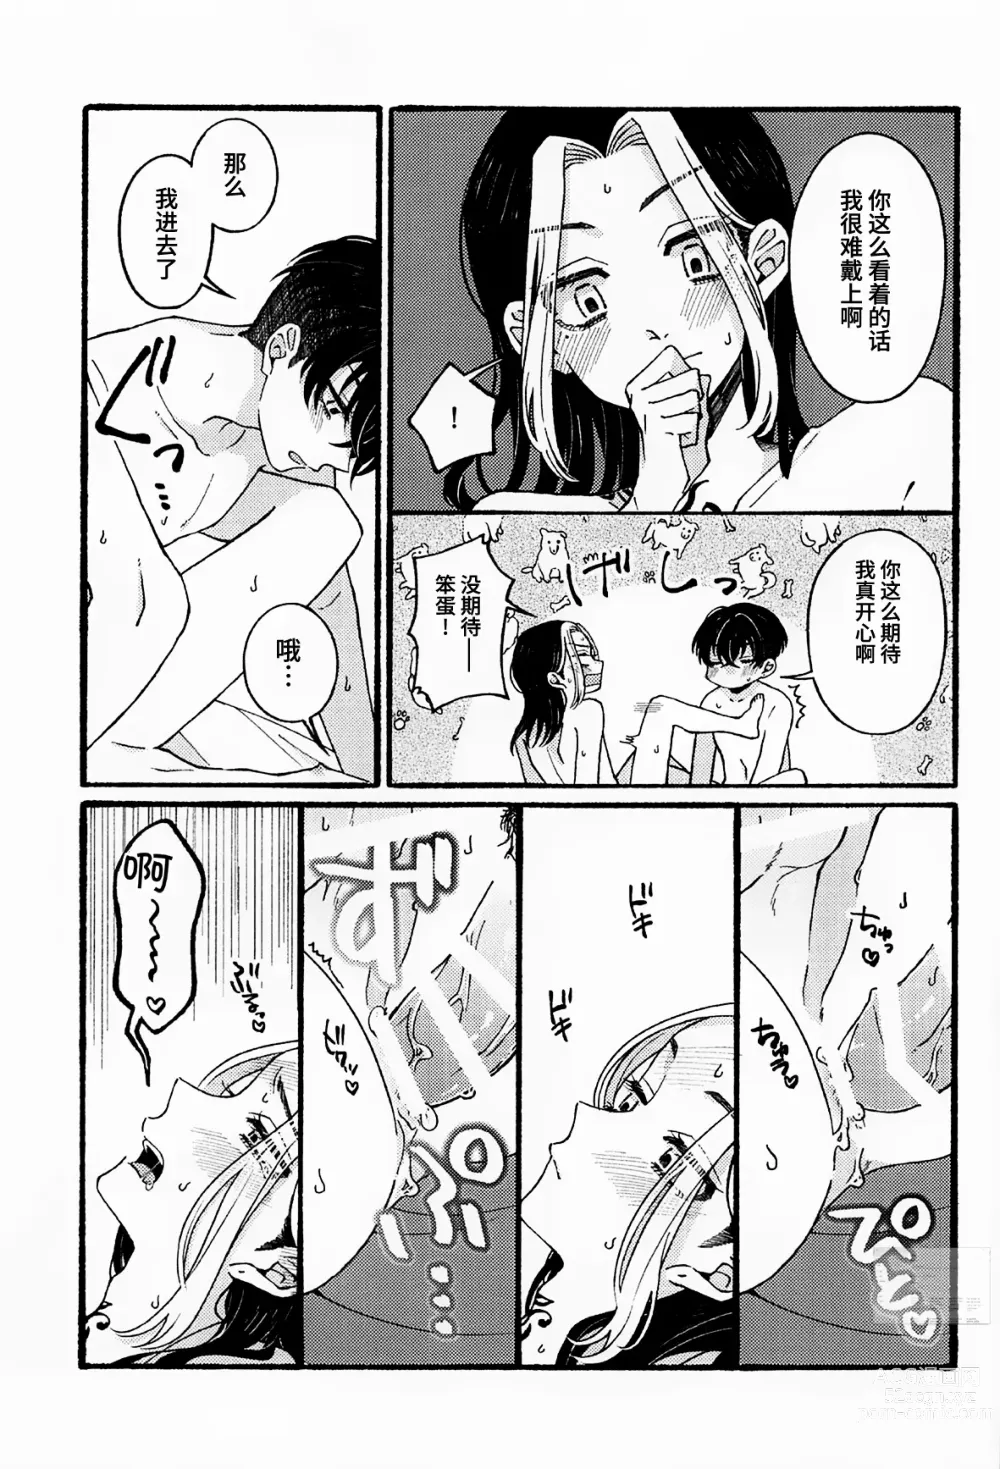 Page 26 of doujinshi BREAK! BREAK! BREAK!